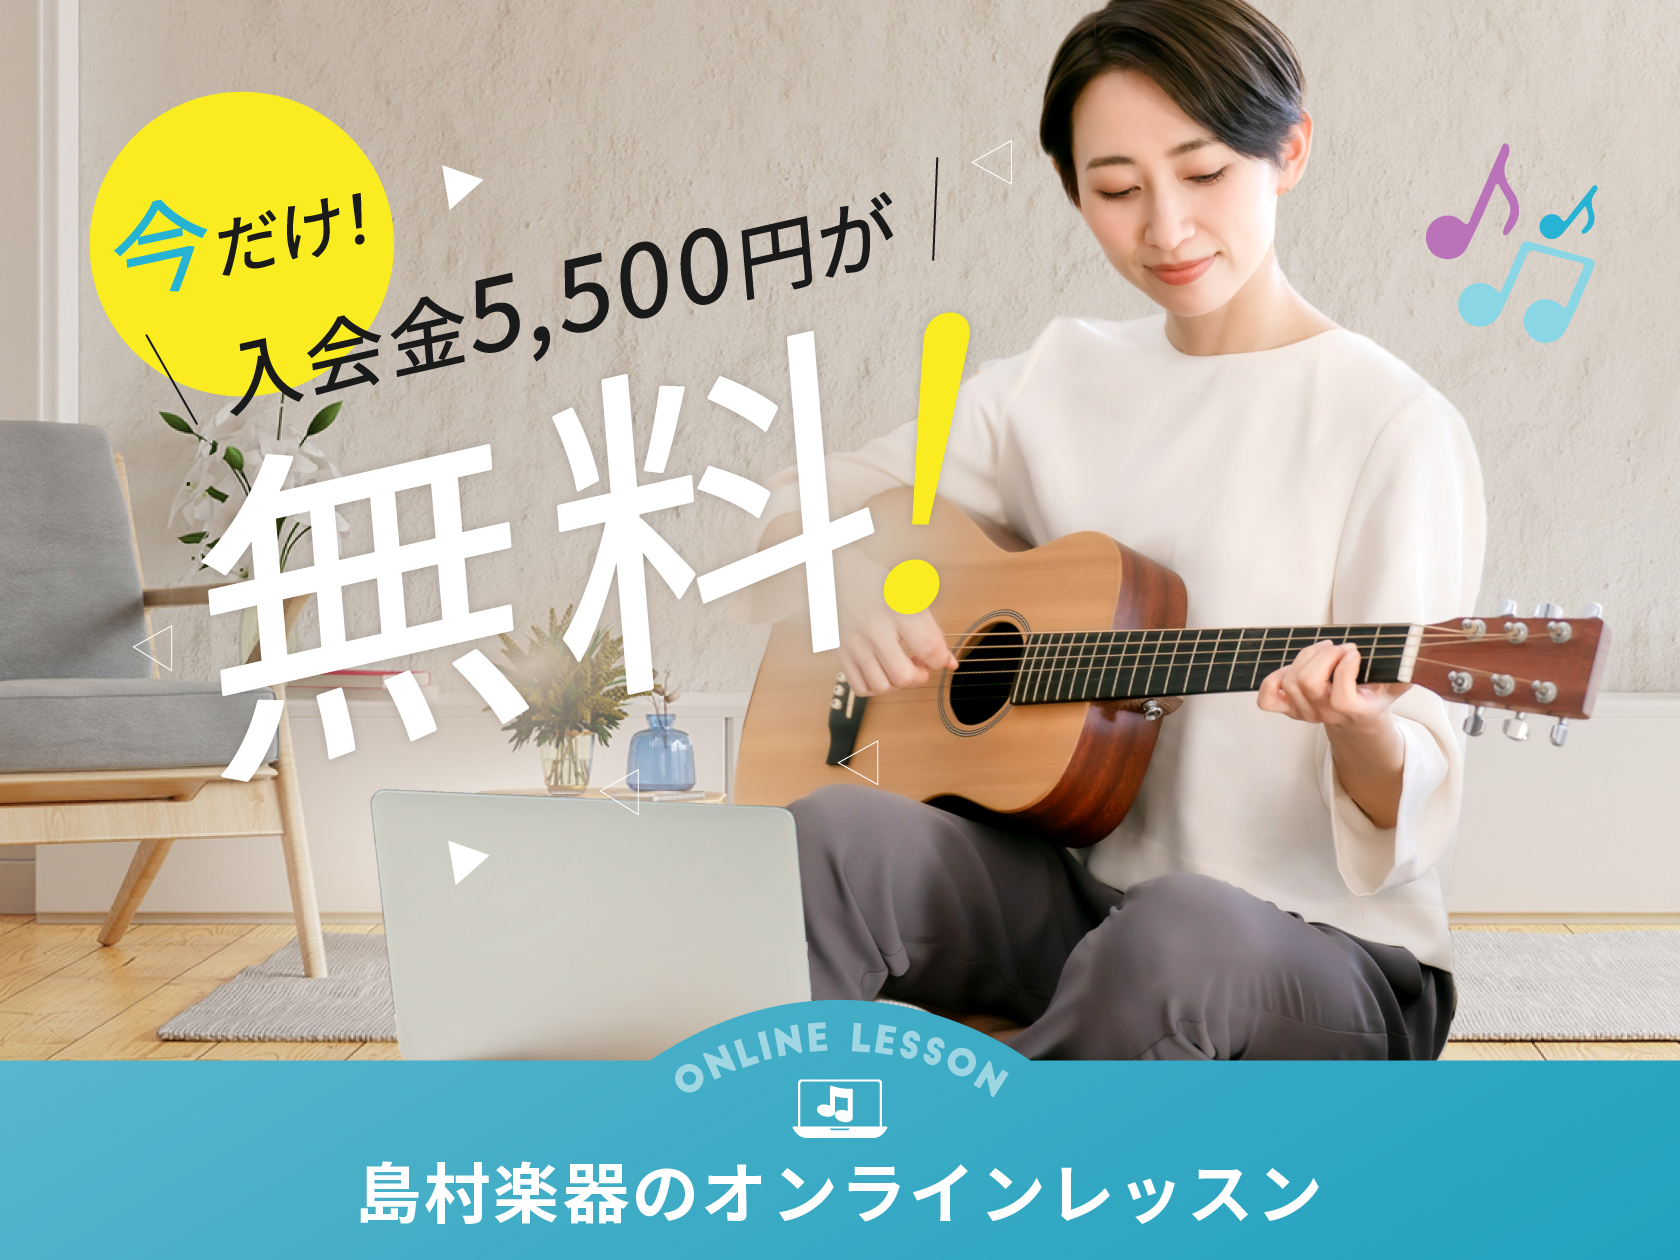 島村楽器株式会社（本社：東京都江戸川区、代表取締役社長：廣瀬 利明、以下 島村楽器）は、同社が運営する音楽教室のオンラインレッスンにて『入会金・体験レッスン無料キャンペーン』を20……